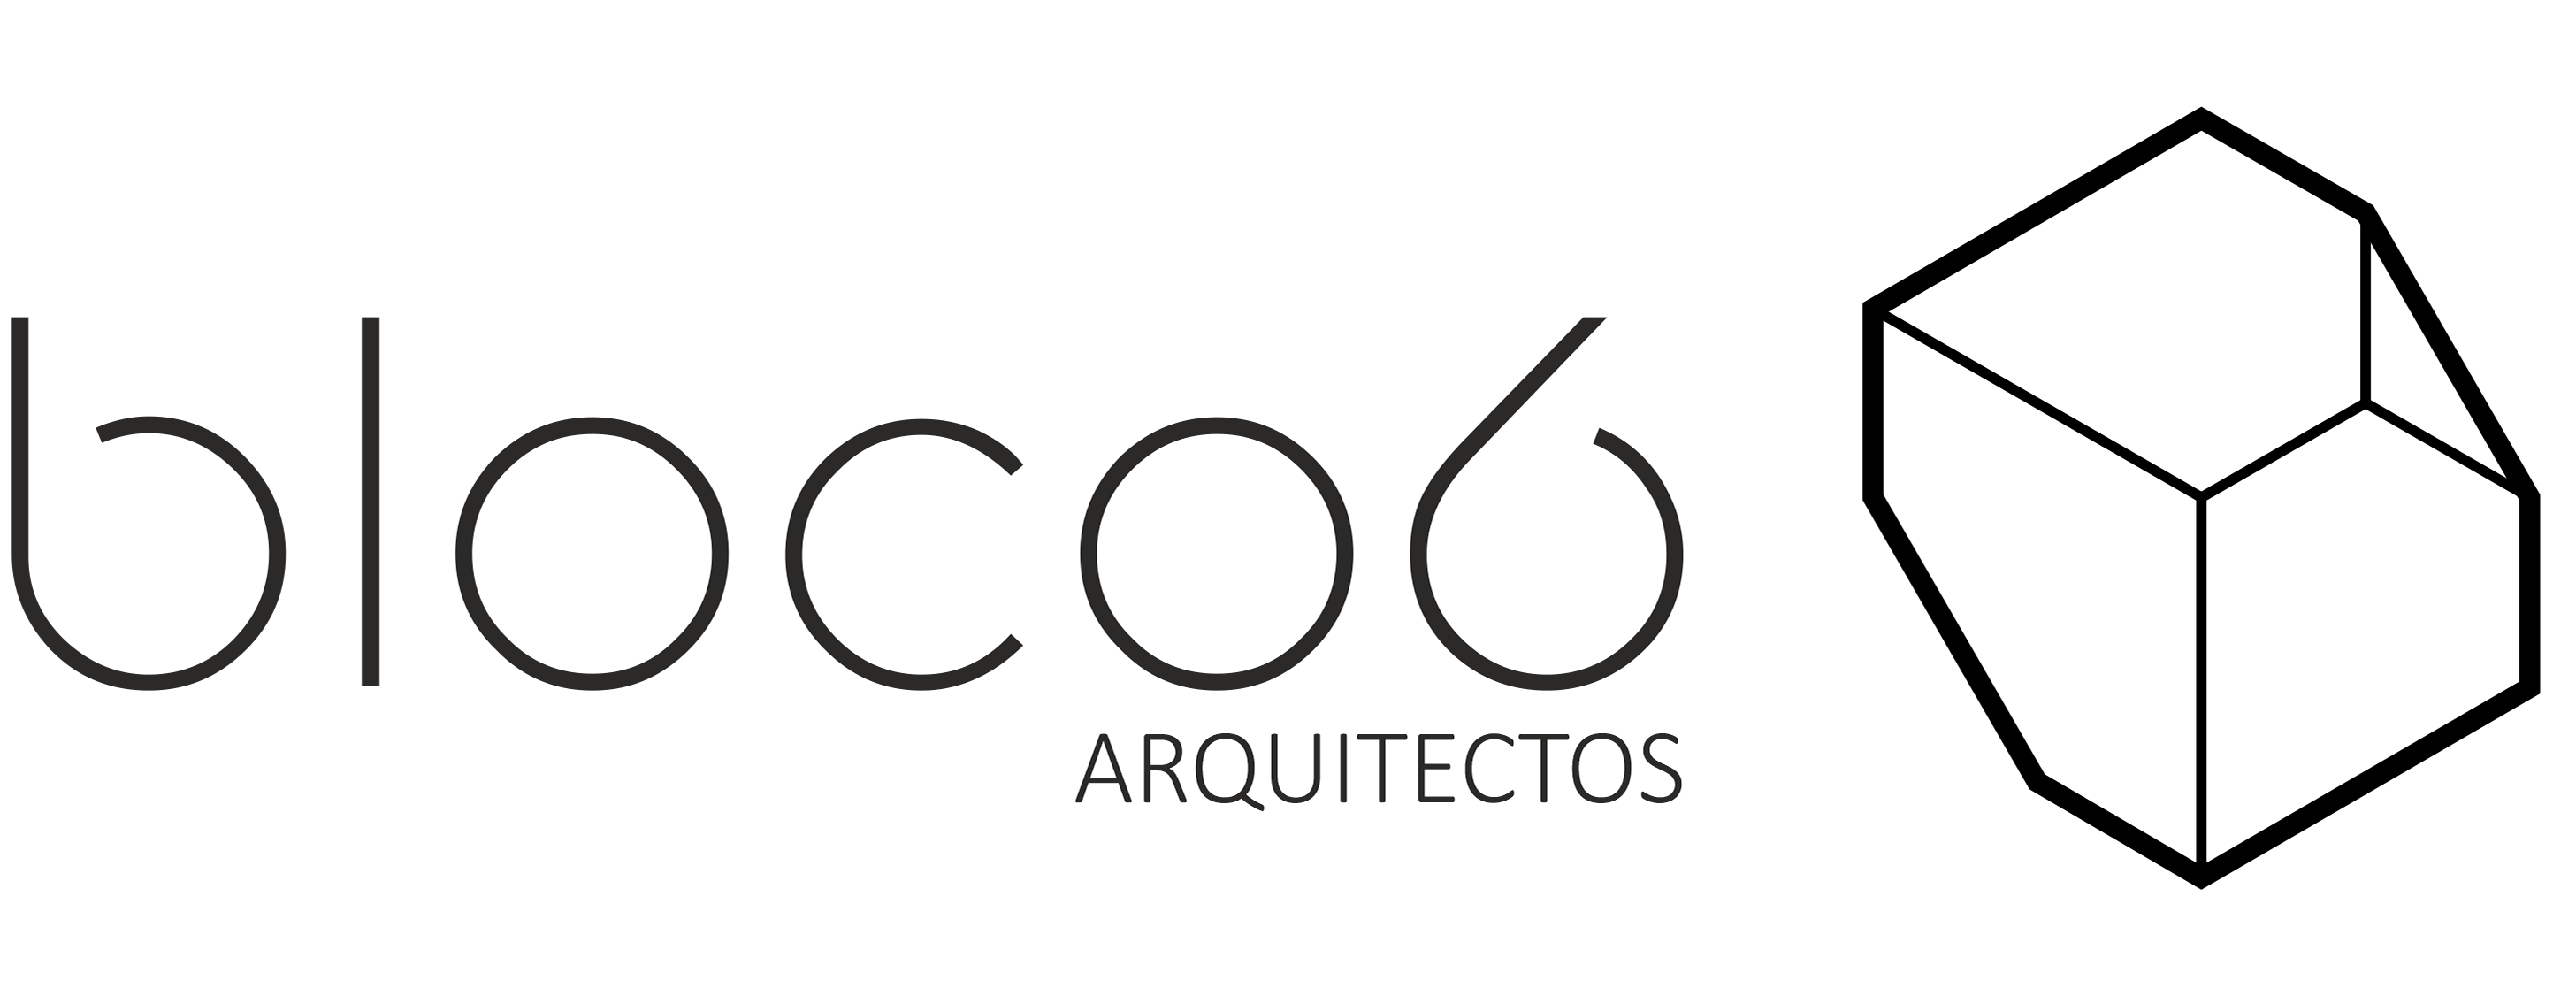 bloco6 - arquitectos